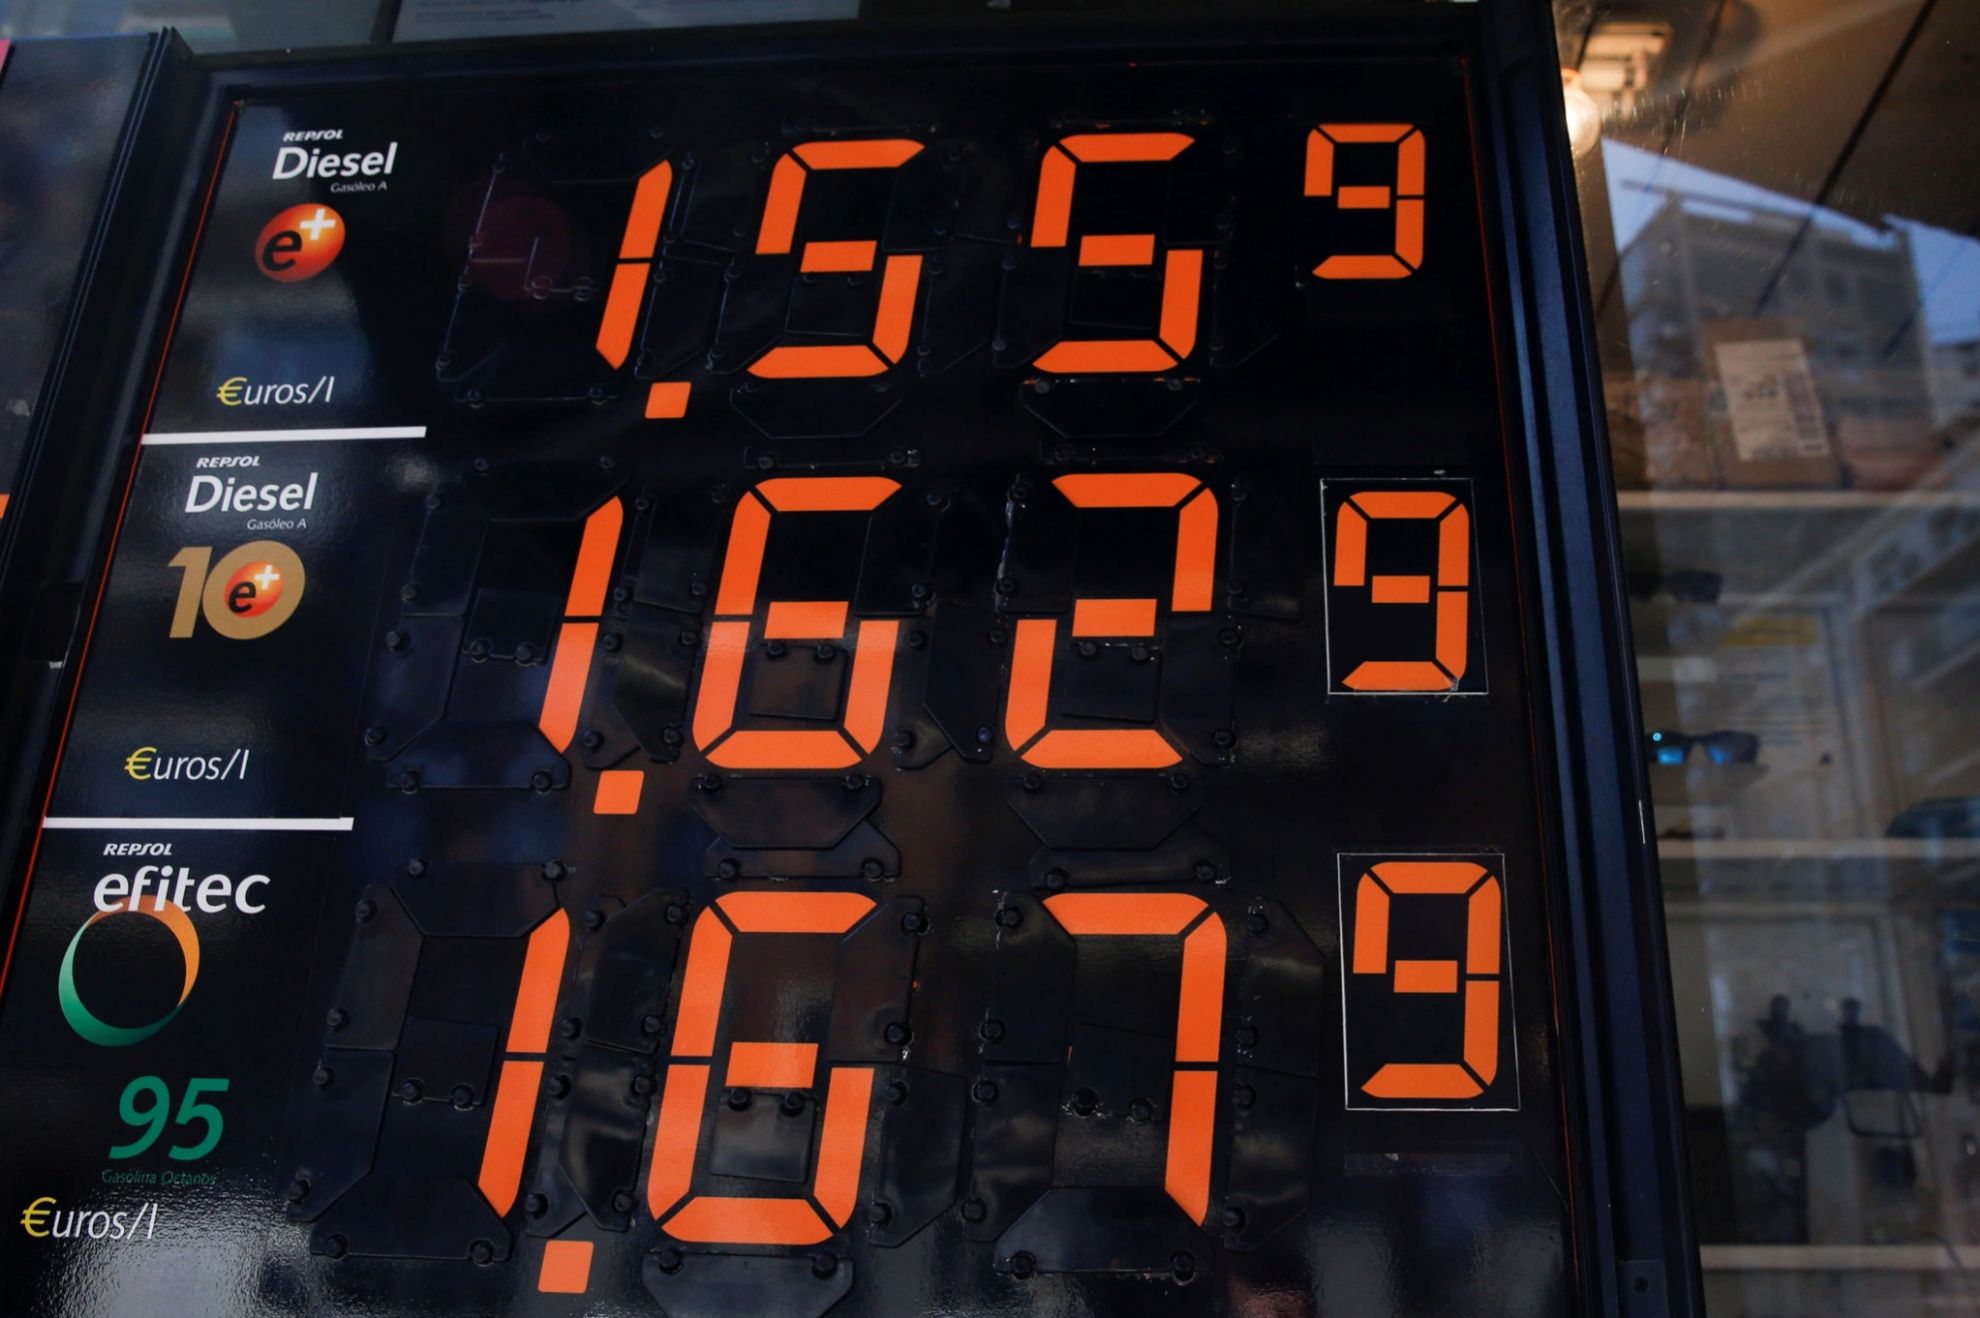 diesel - record historico - precio - 1,462 euros - Comision Europea - gasolina - precio del combustible